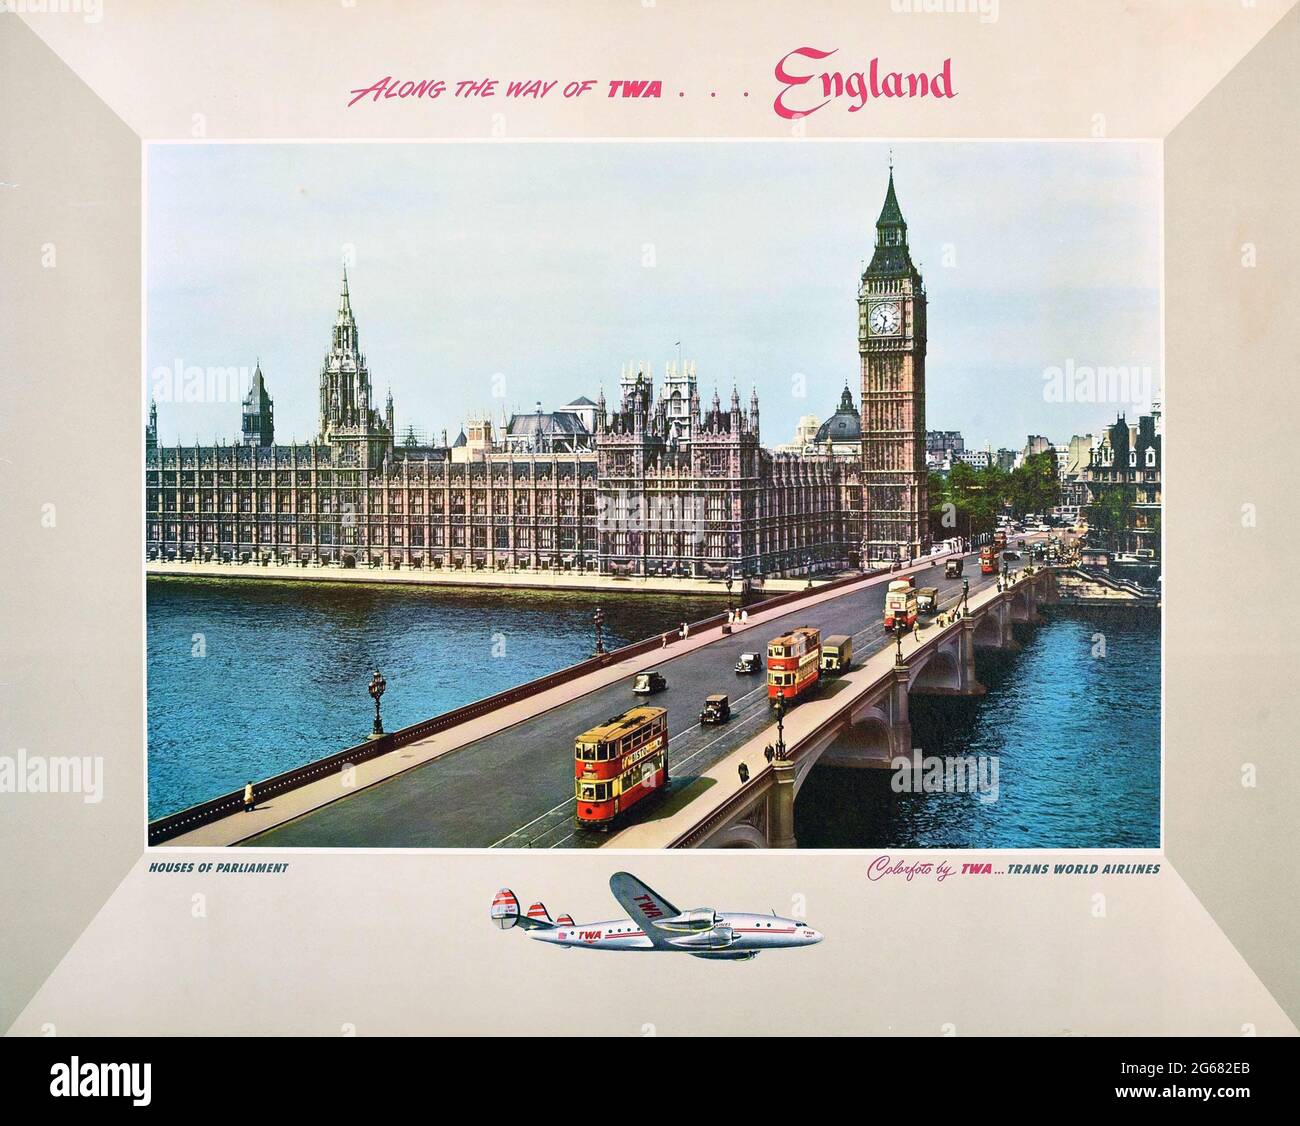 Auf dem Weg der TWA... England, Vintage Travel Poster, TWA – Trans World Airlines. Houses of Parliament, Big Ben, Westminster Bridge, London. 50er Jahre. Stockfoto